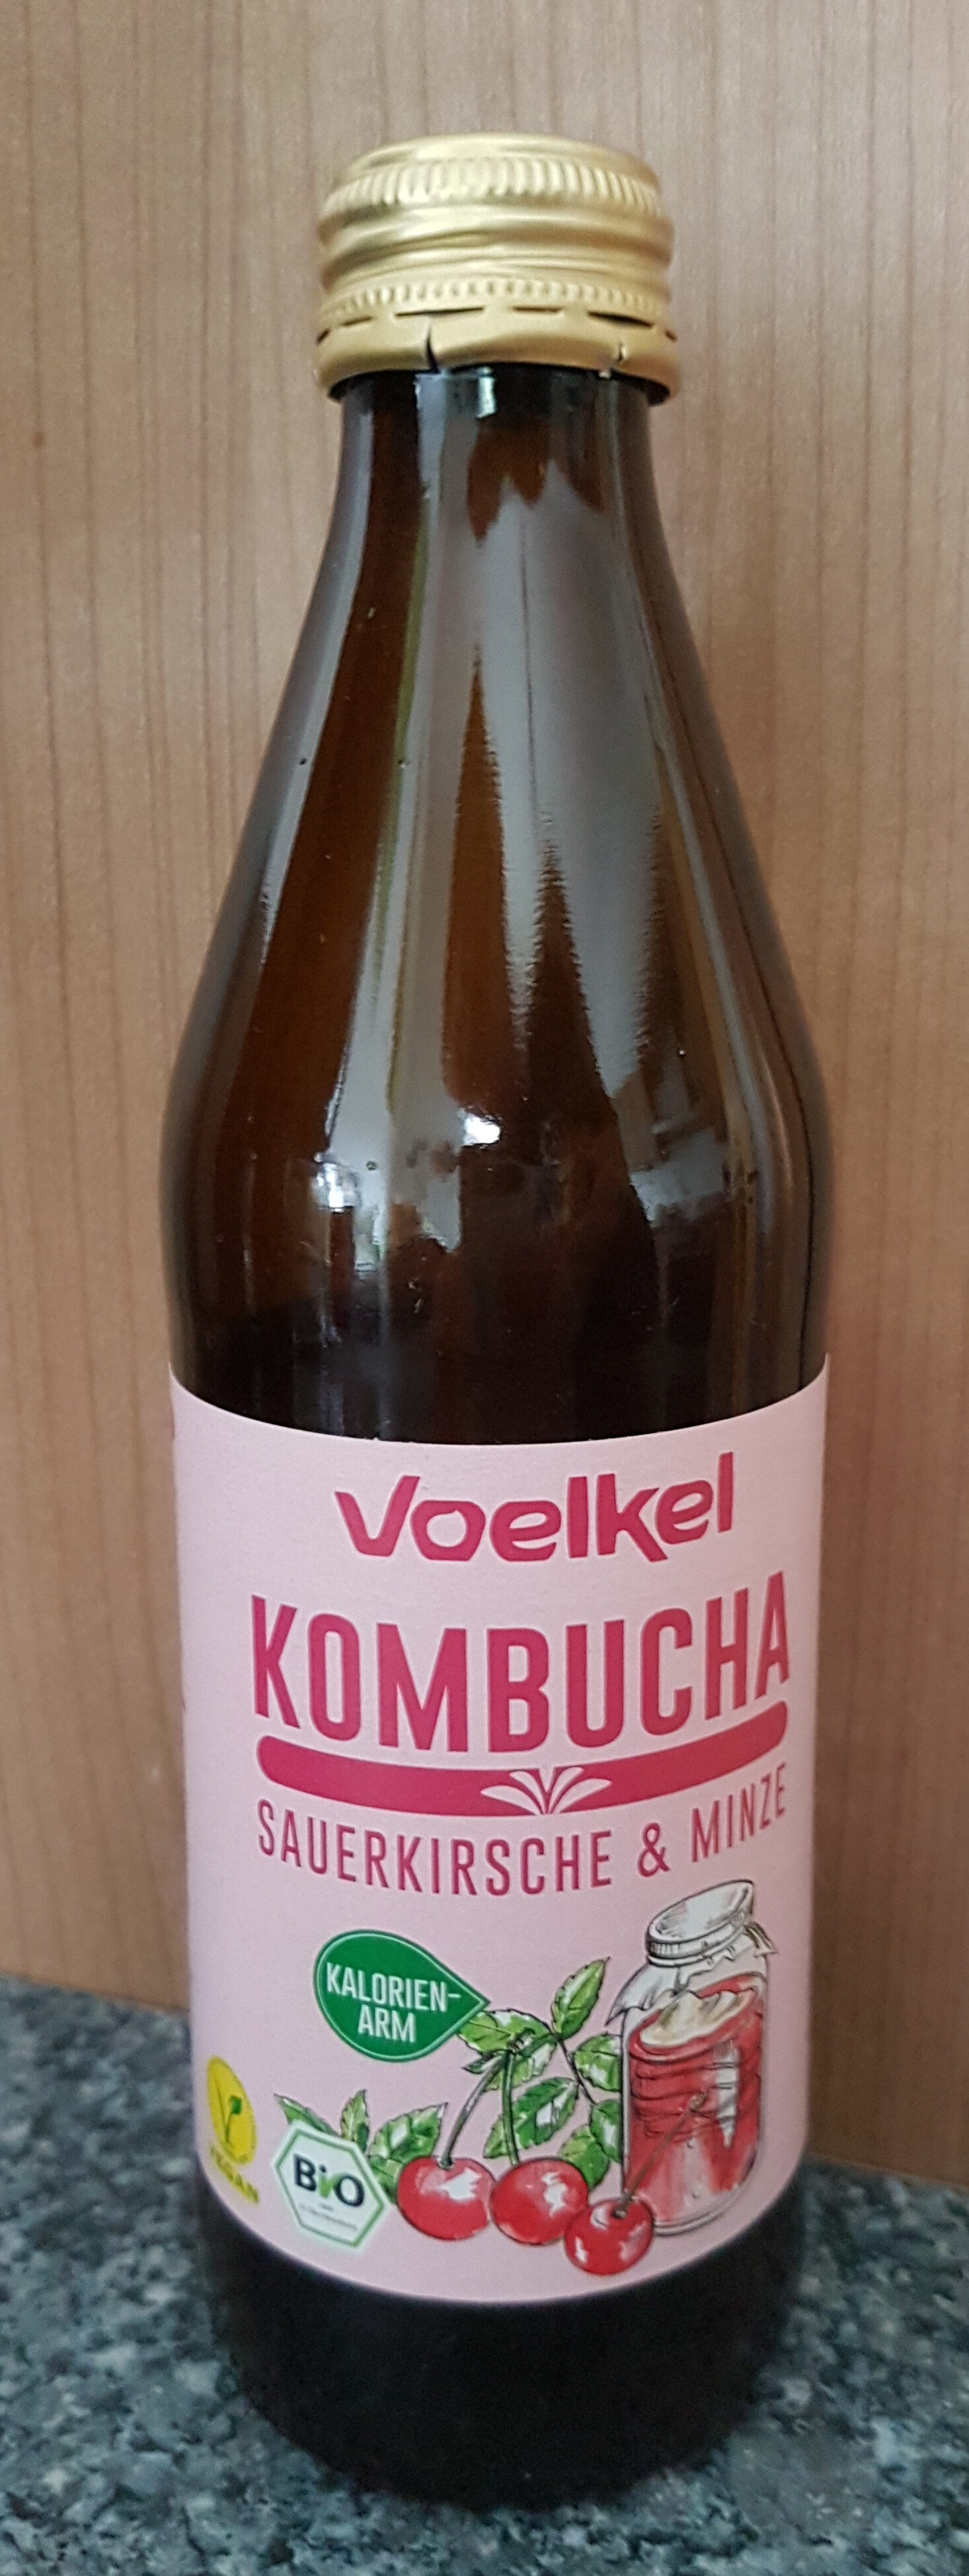 Kombucha - Product - de